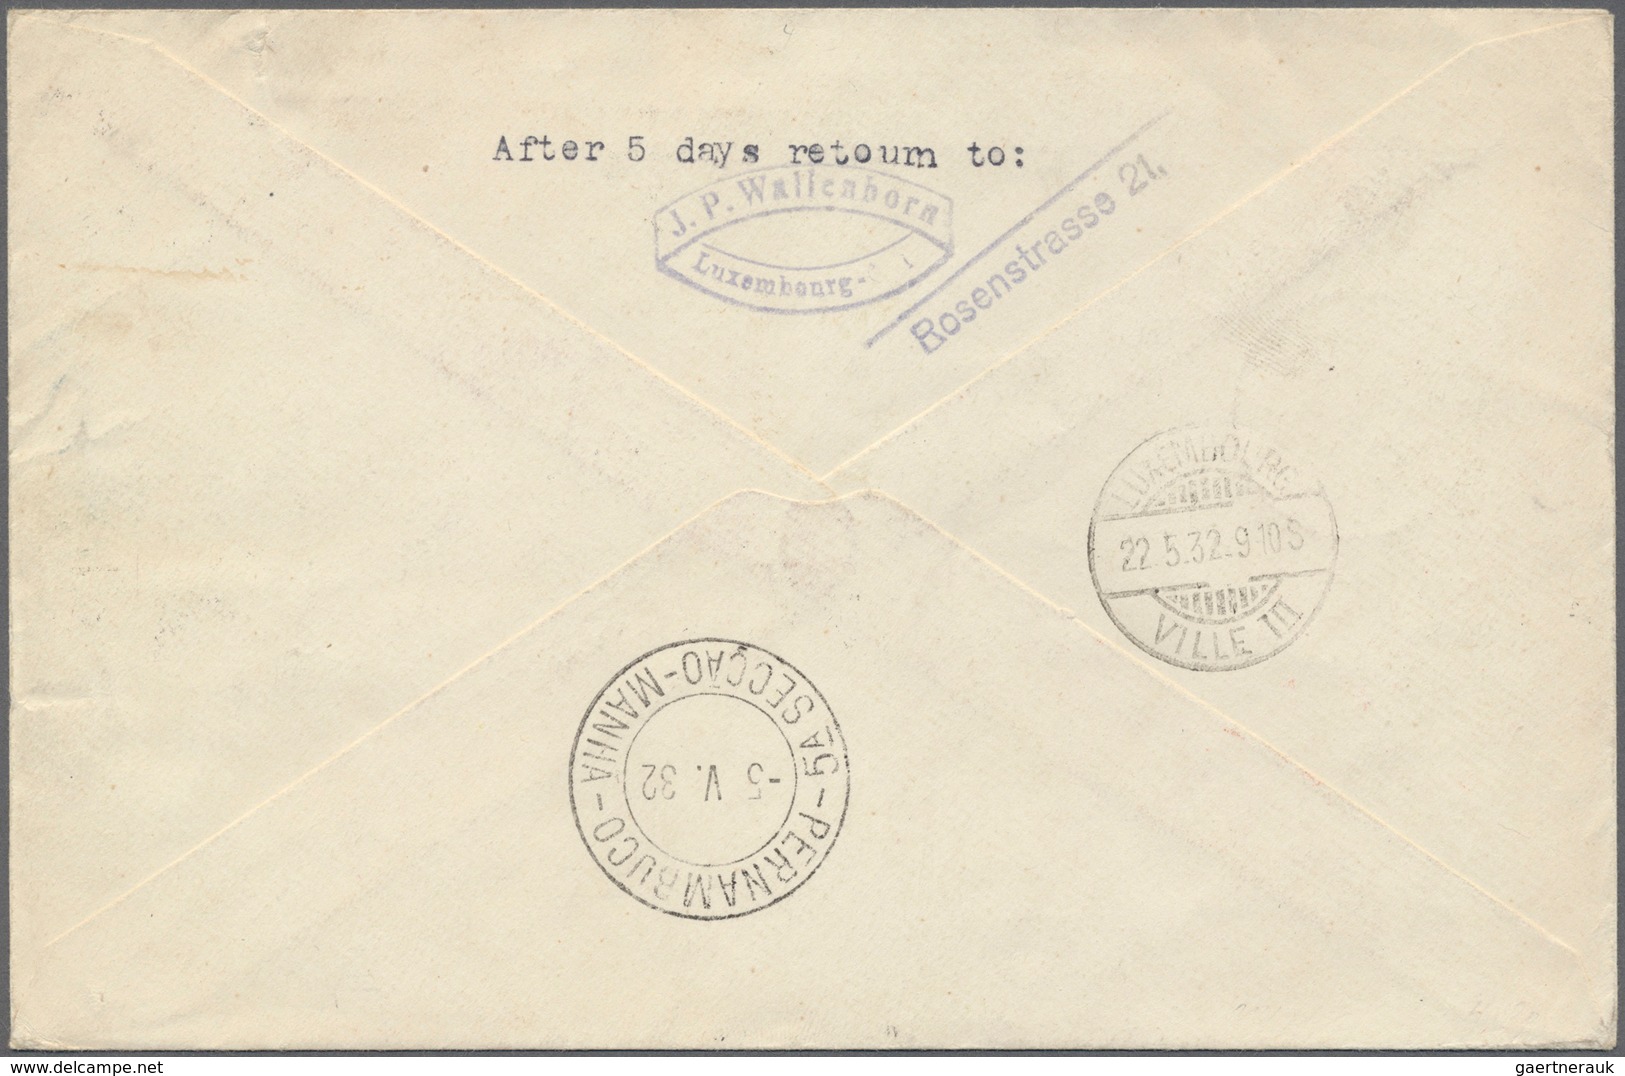 13156 Zeppelinpost Europa: 1932, 4. Südamerikafahrt, R-Brief Von LUXEMBURG-VILLE Mit Flugpostsatz 234/237 - Autres - Europe